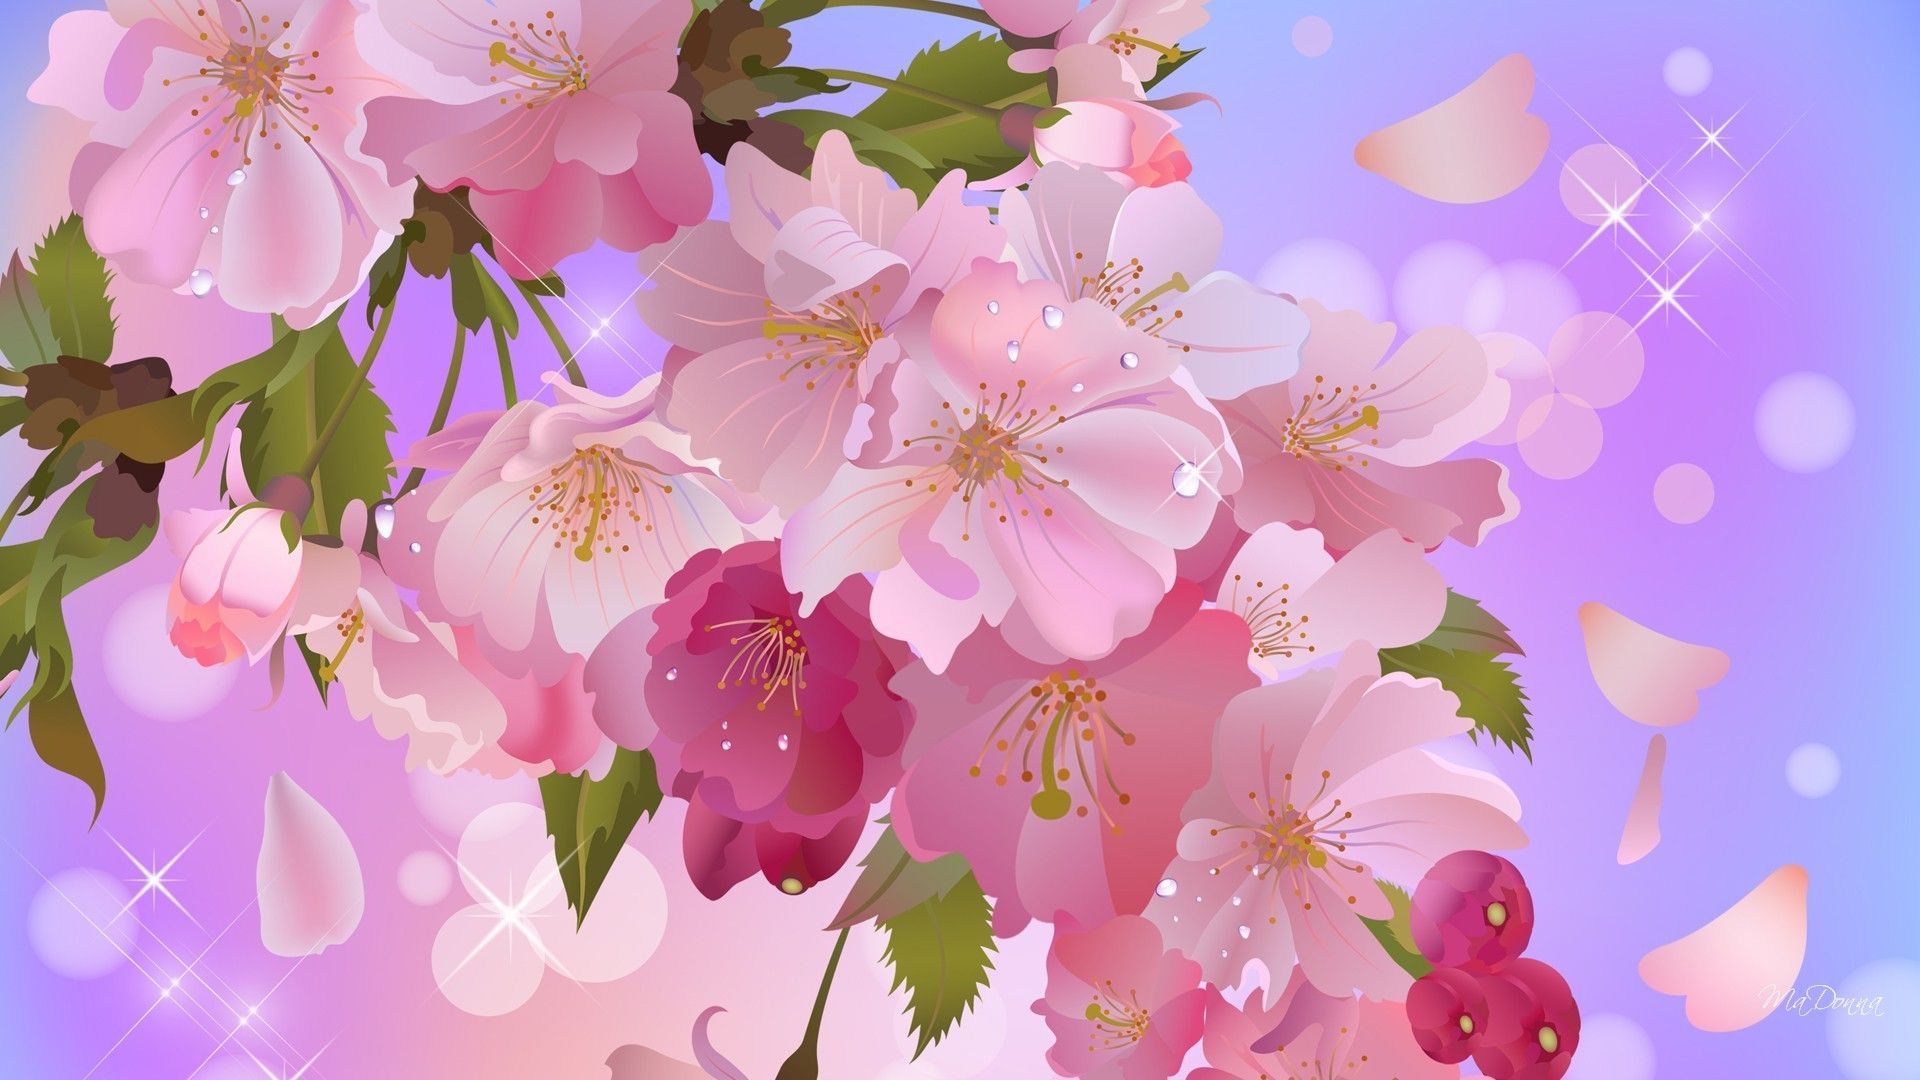 والپیپر ملیح نقاشی دیجیتالی شگفت از شکوفه های هلویی رنگ سیب